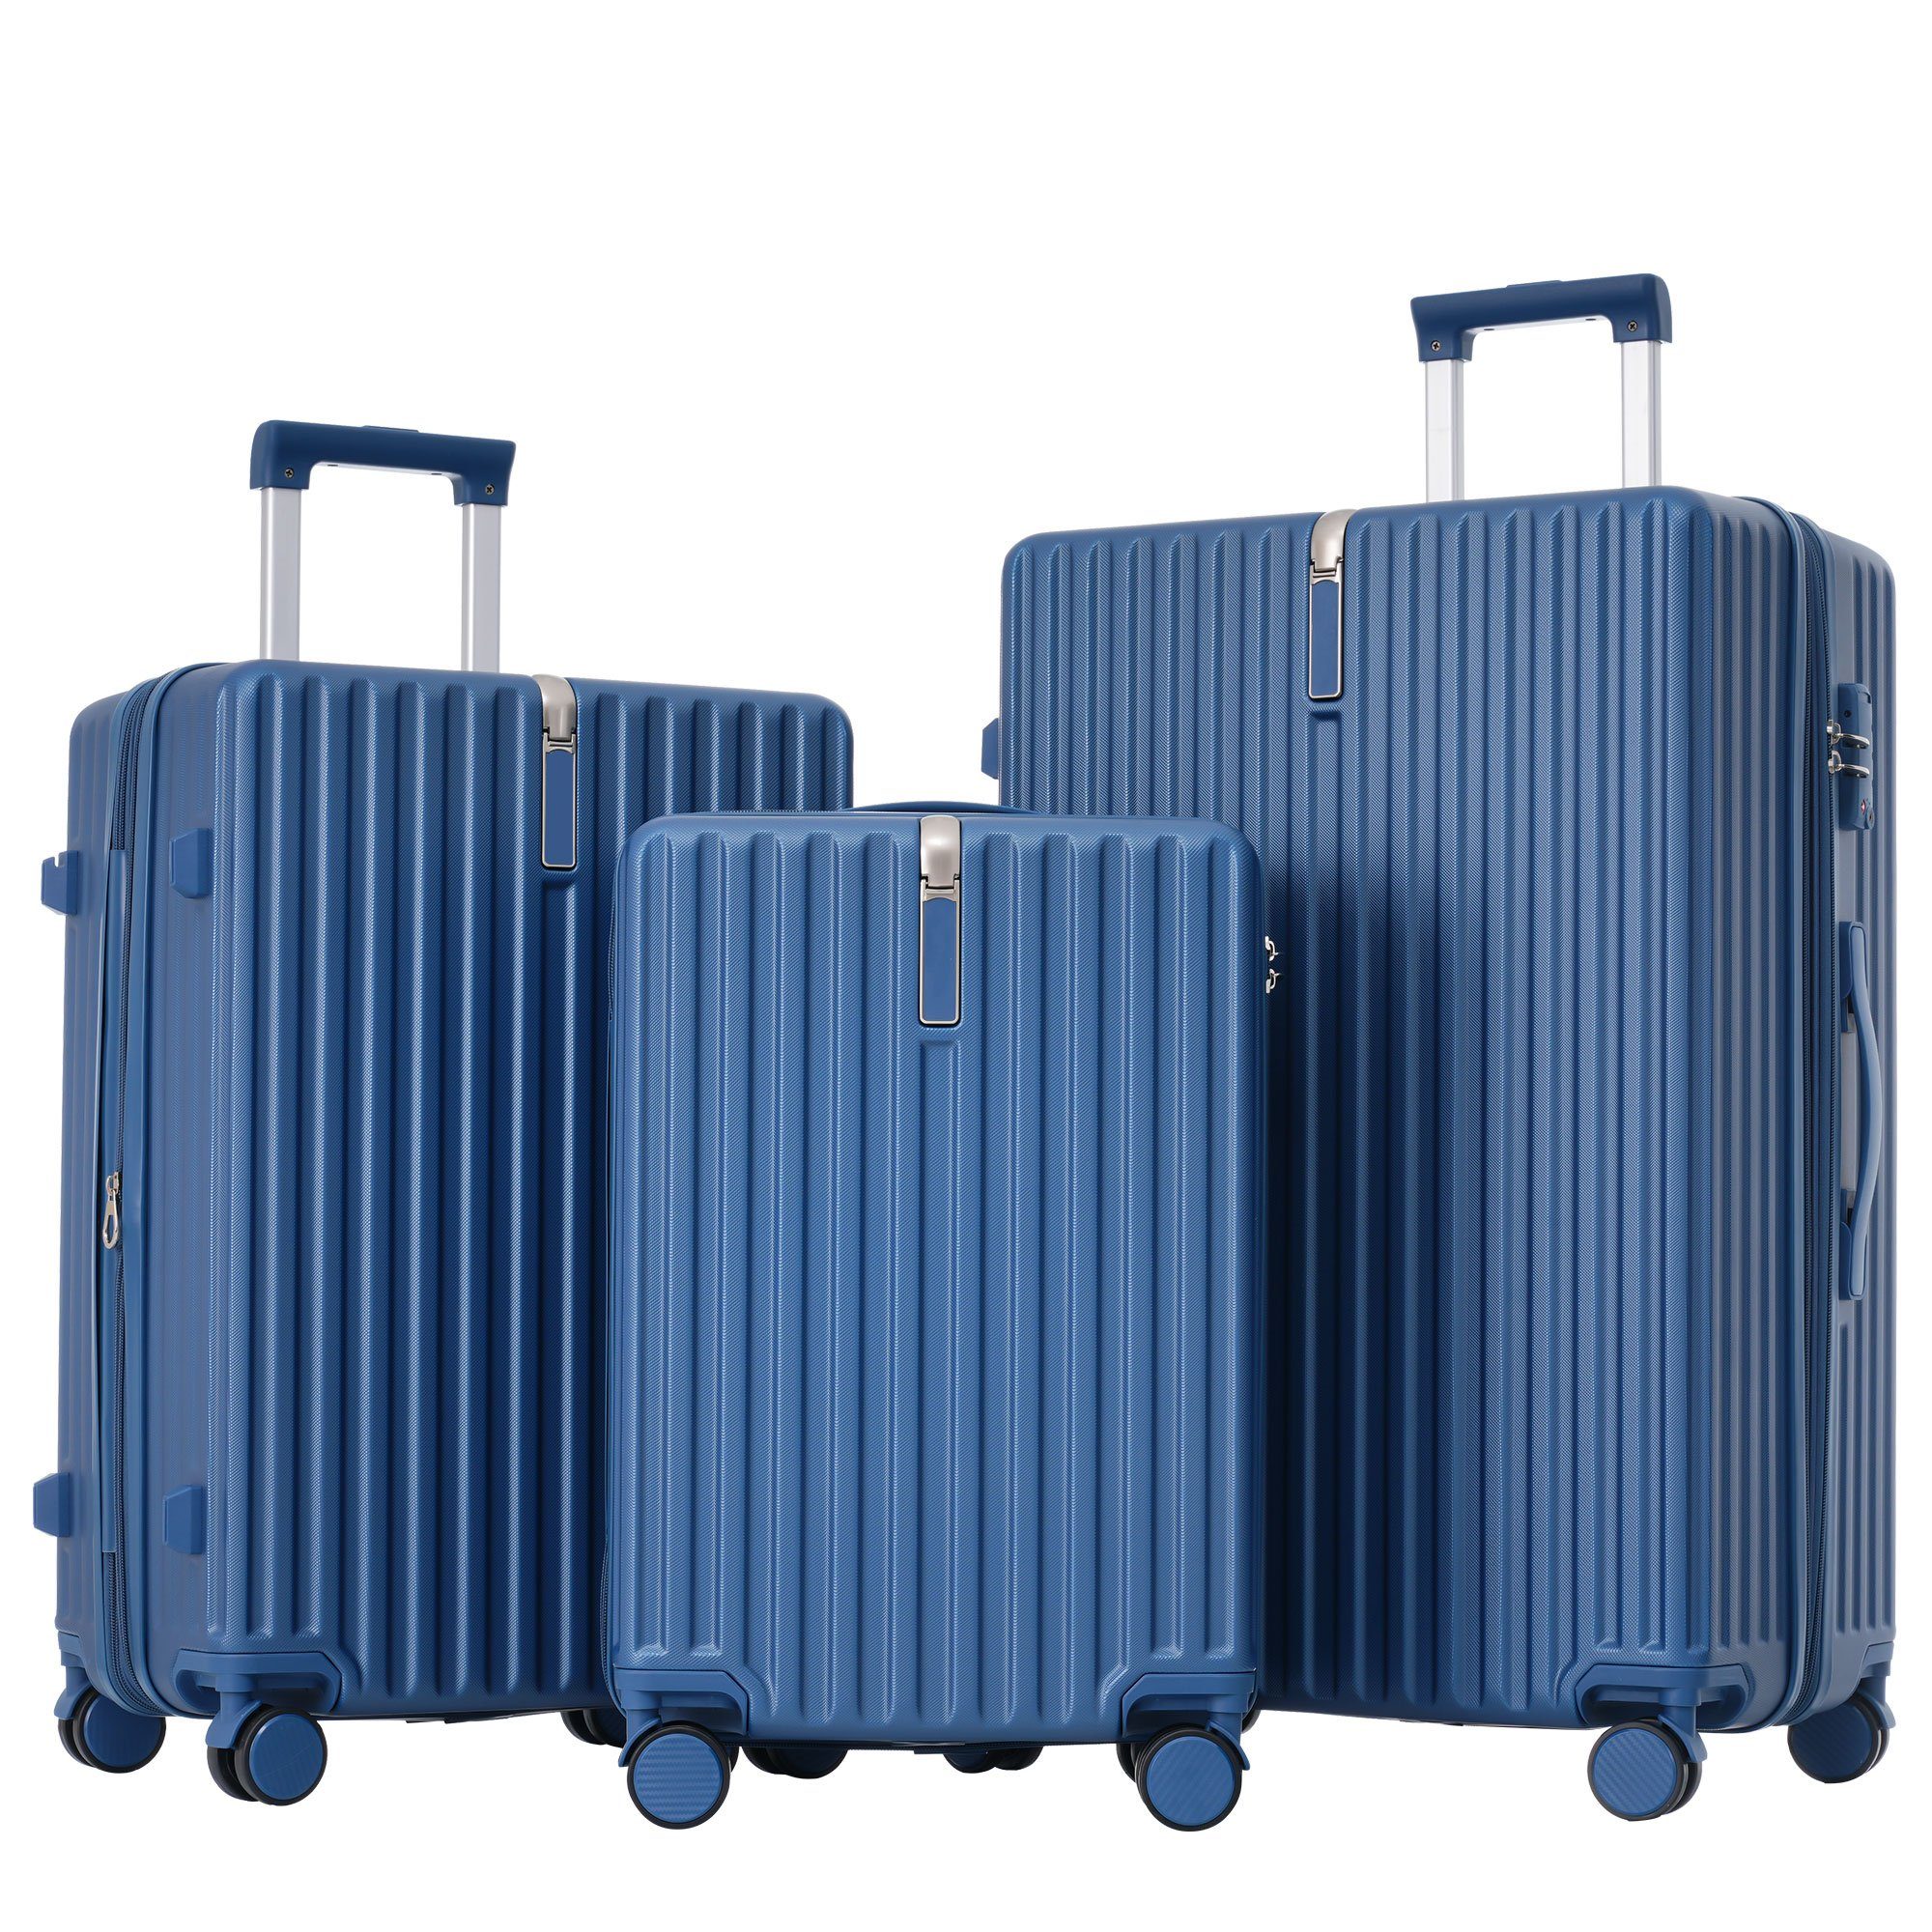 REDOM Trolleyset Kofferset Hartschalentrolley Handgepäck Reisekoffer Set, 4 Rollen, (3 tlg) Blau